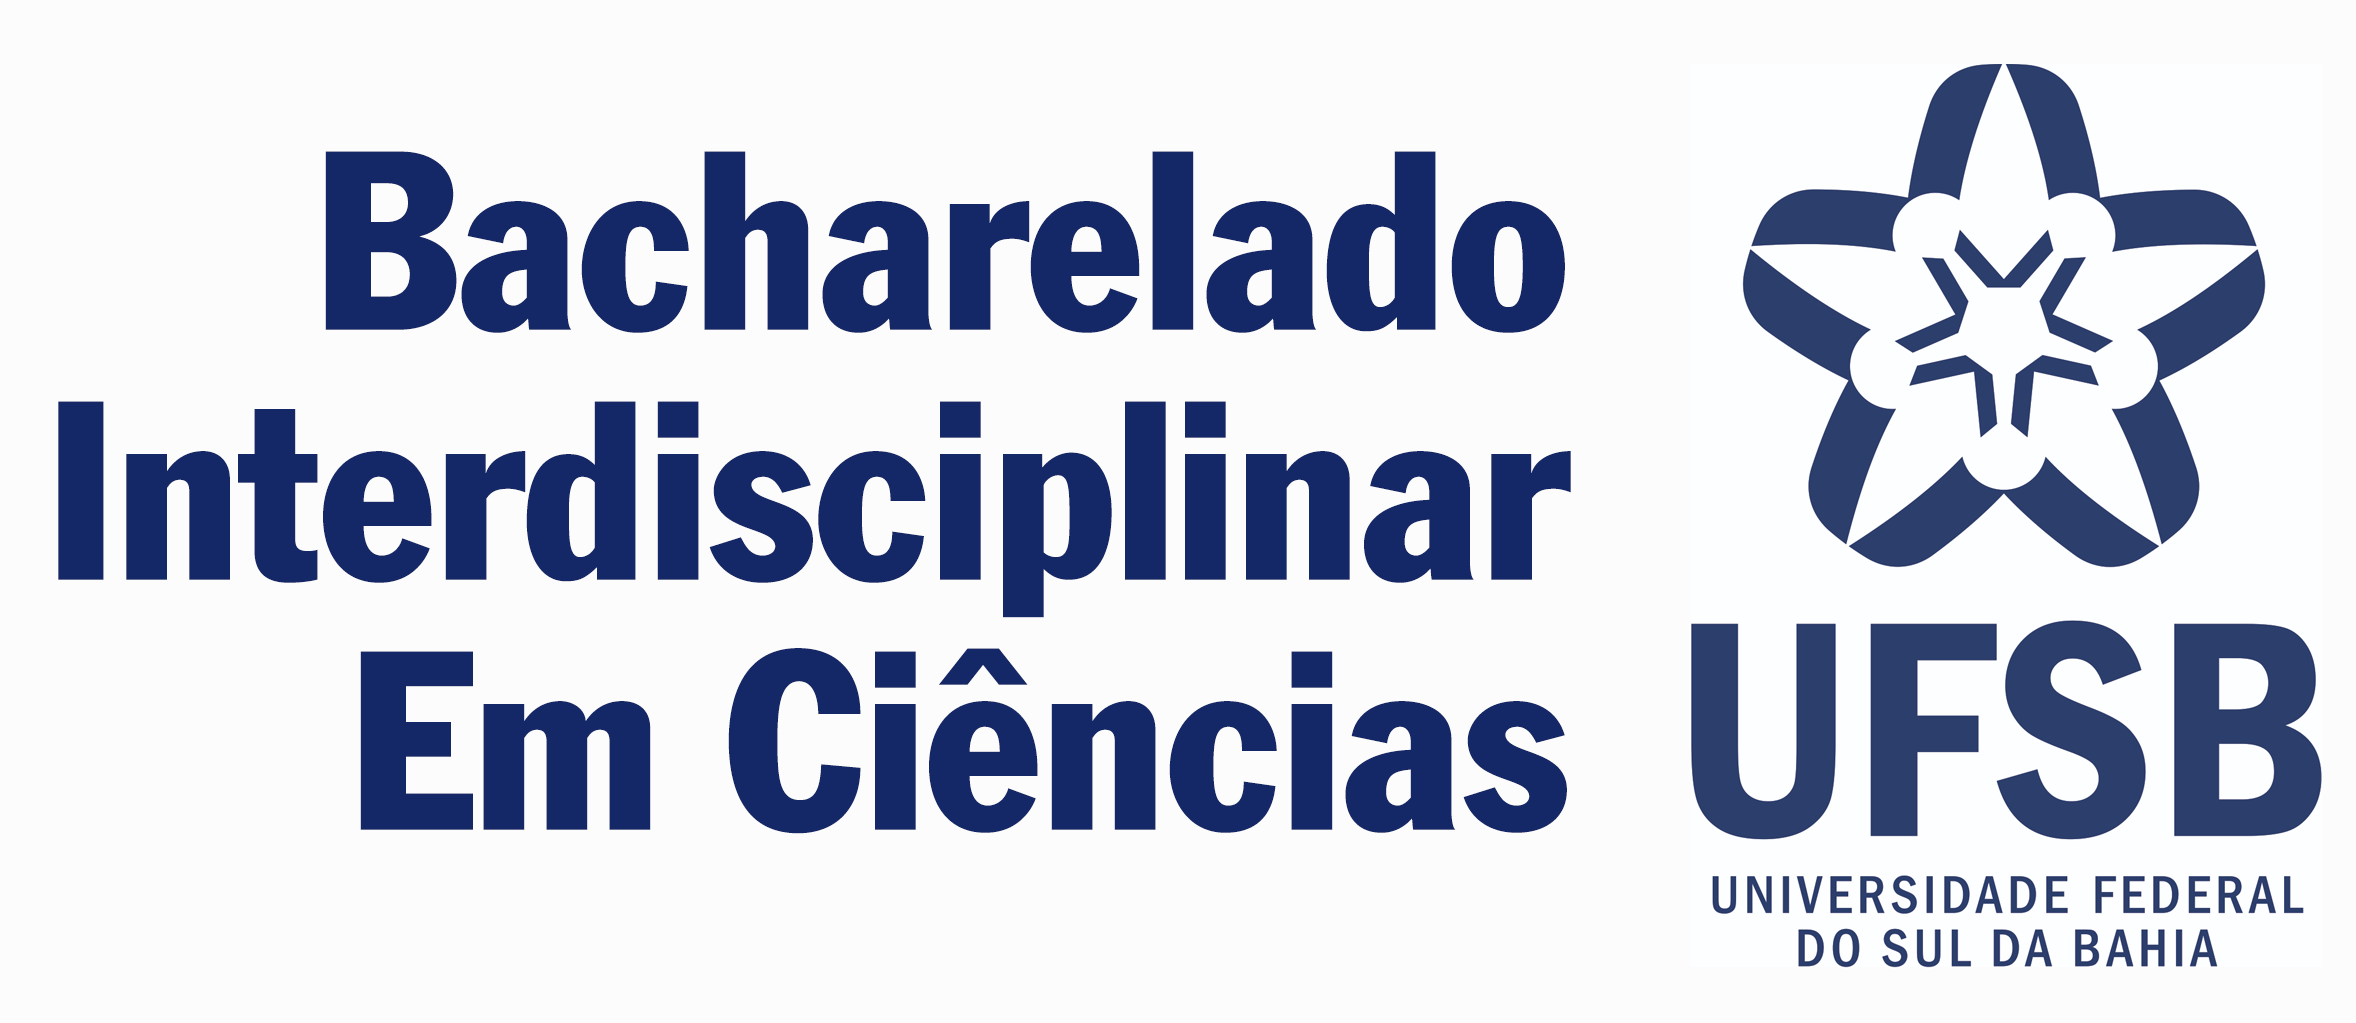 logo BIC